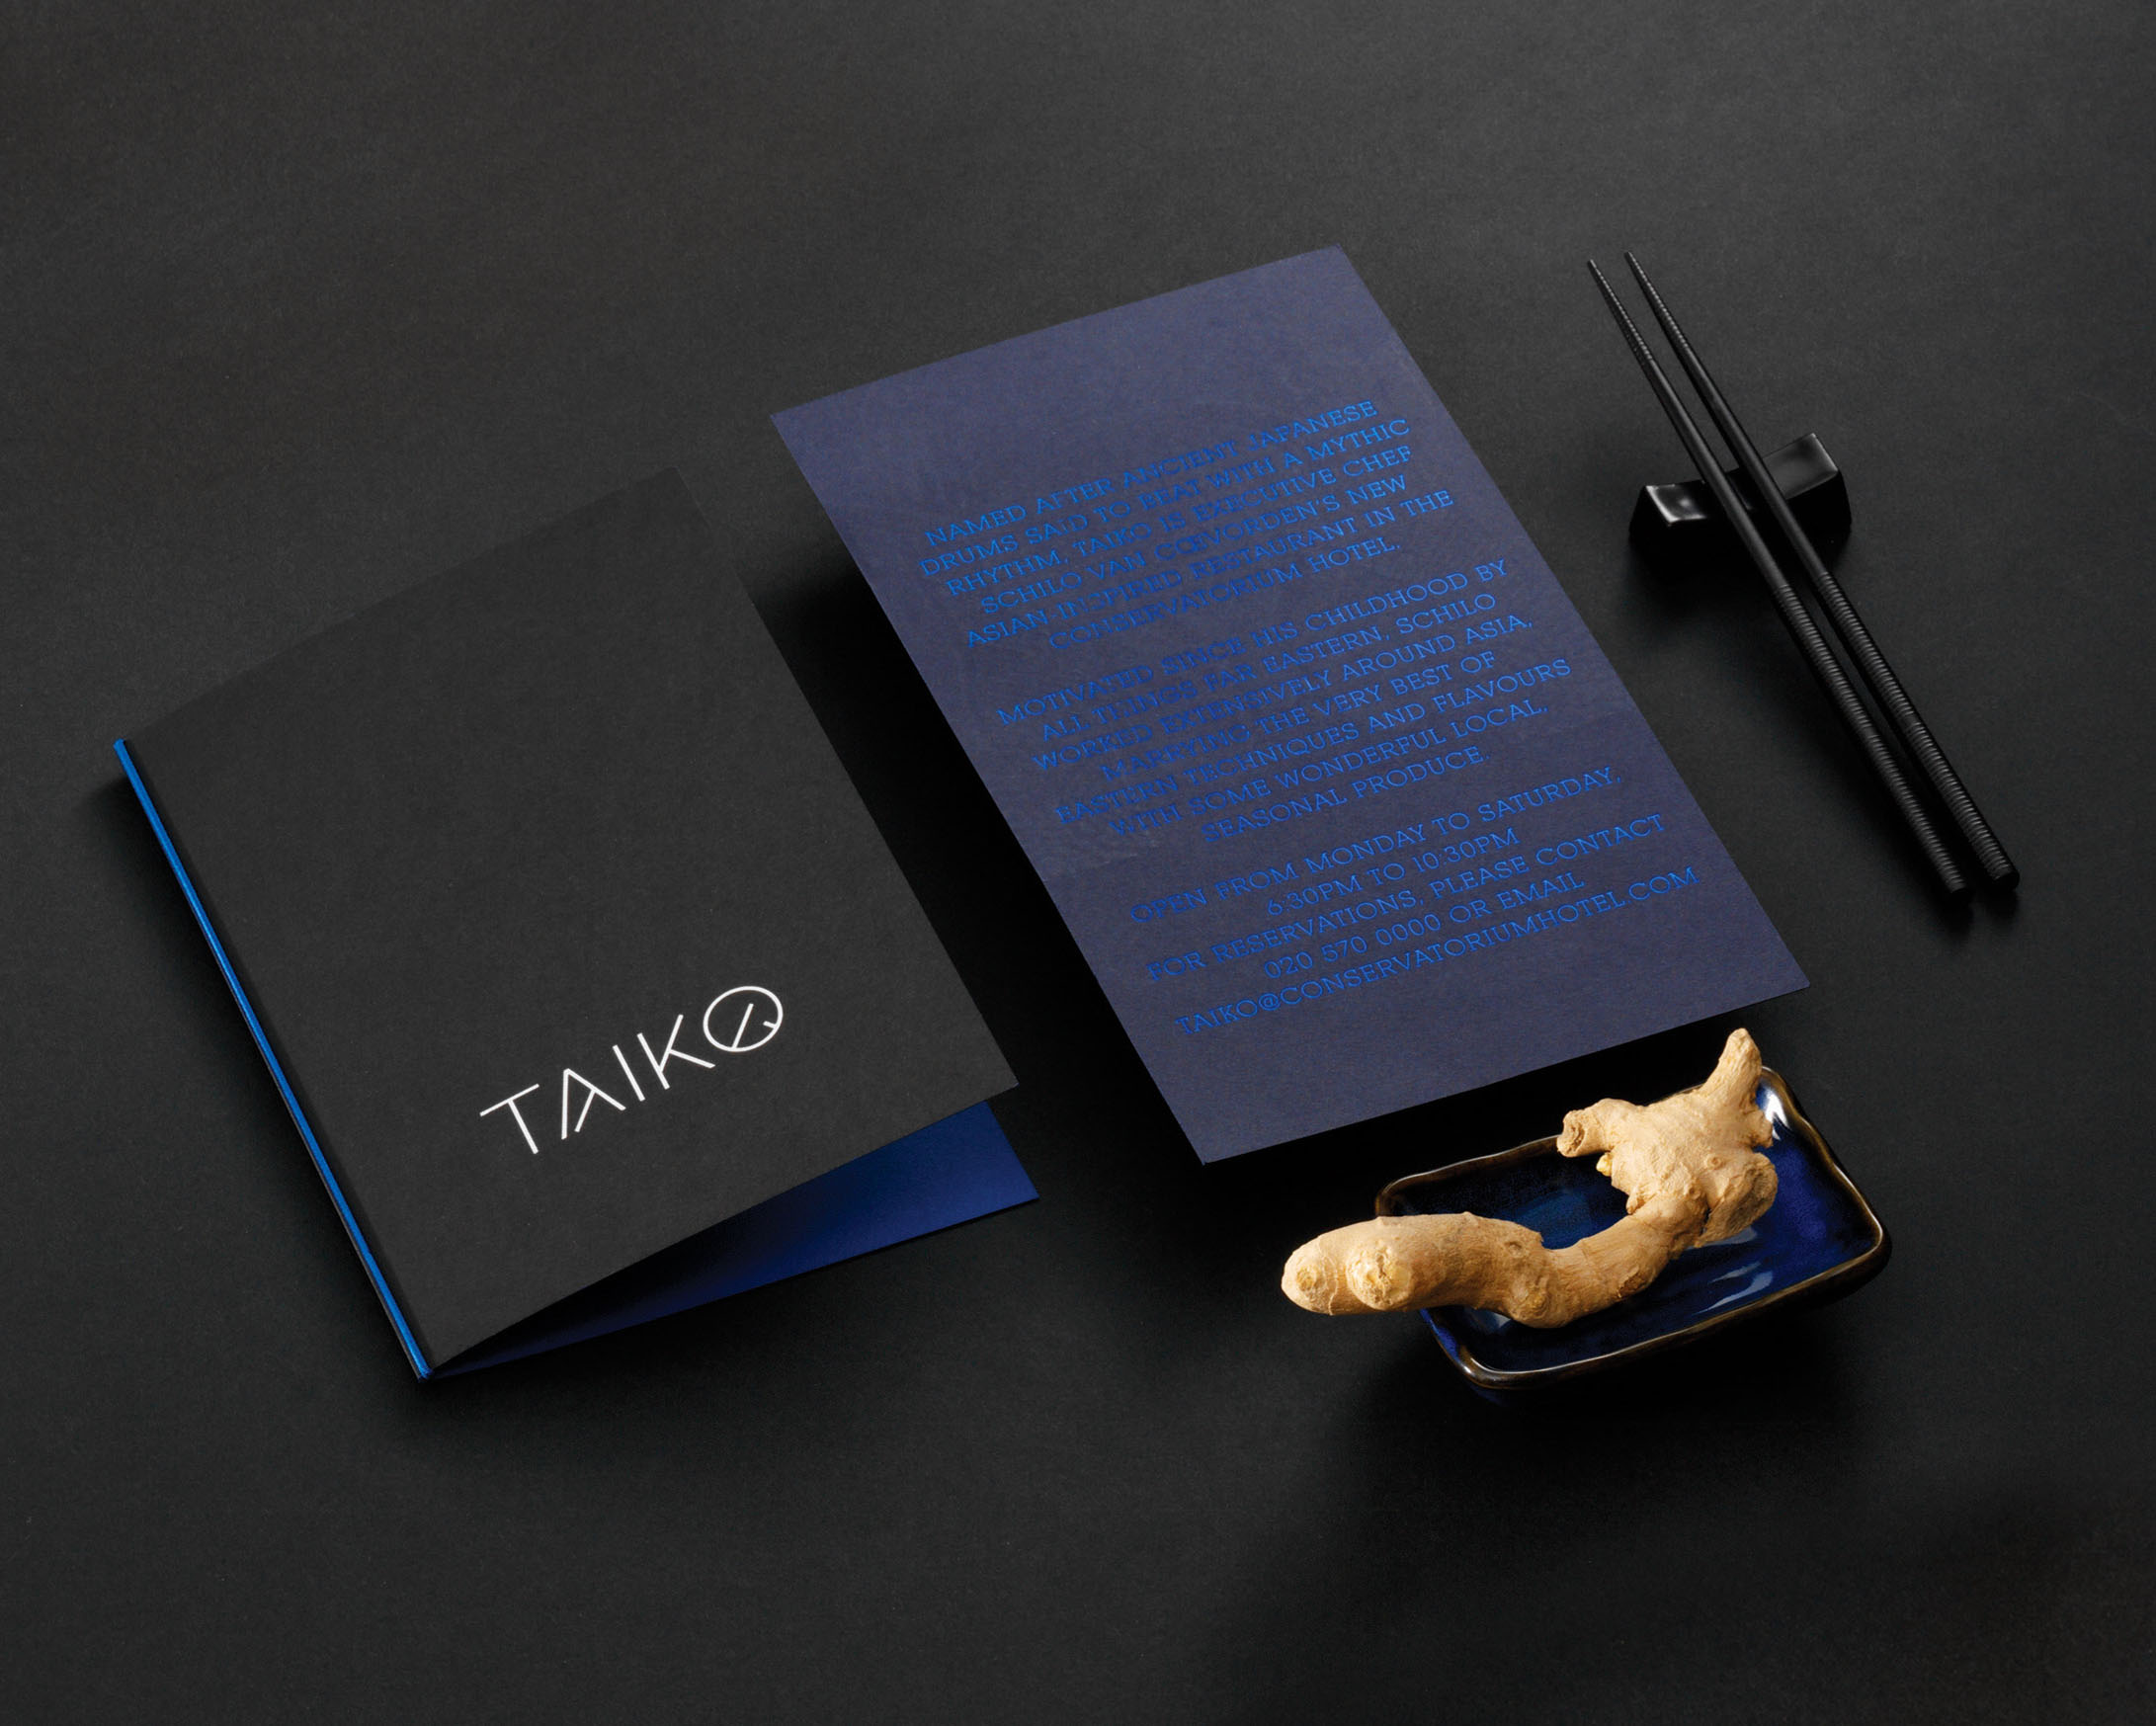 Taiko-restaurant-04